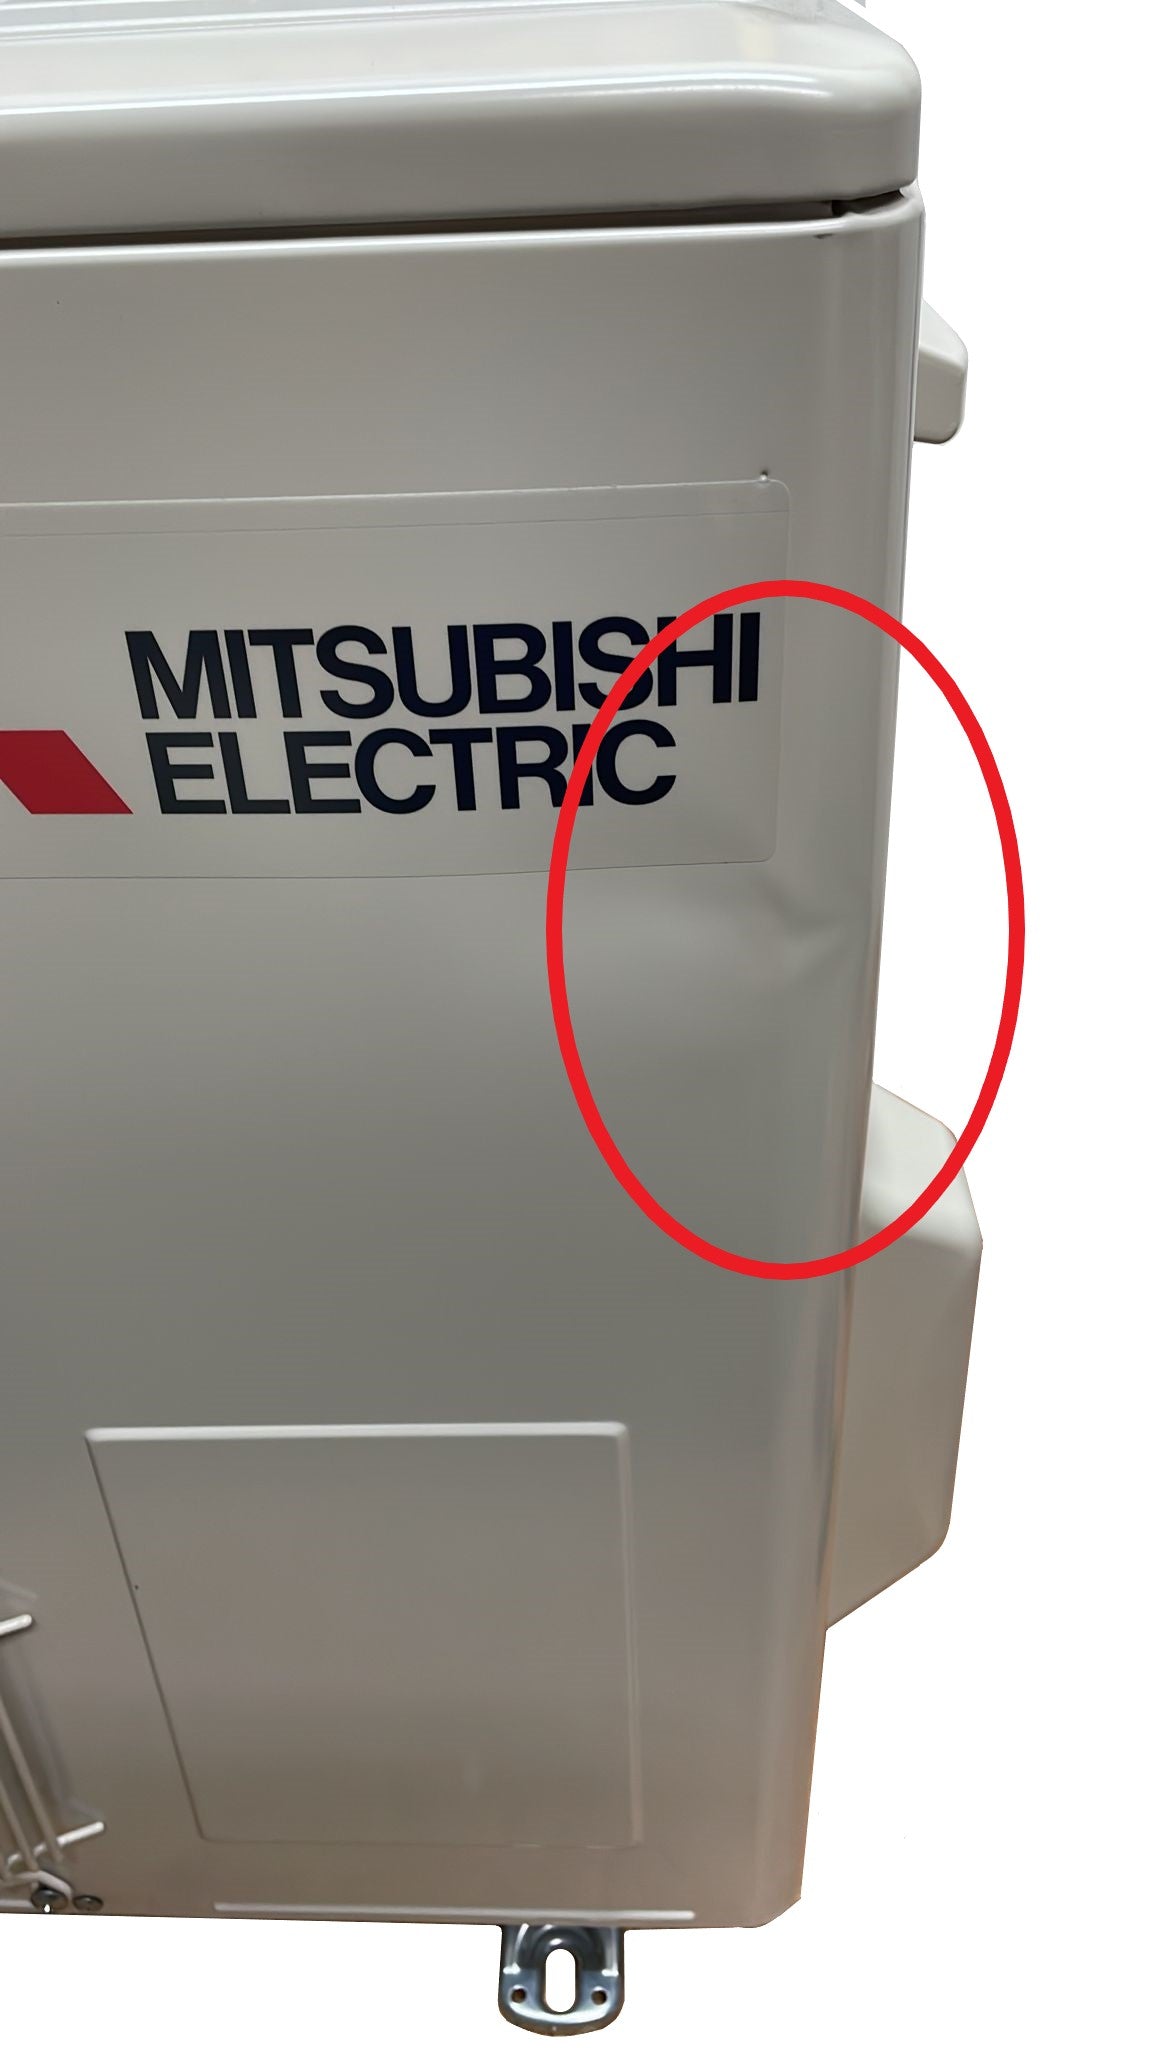 immagine-6-mitsubishi-electric-area-occasioni-climatizzatore-condizionatore-mitsubishi-electric-inverter-serie-dw-12000-btu-msz-dw35vf-r-32-wi-fi-optional